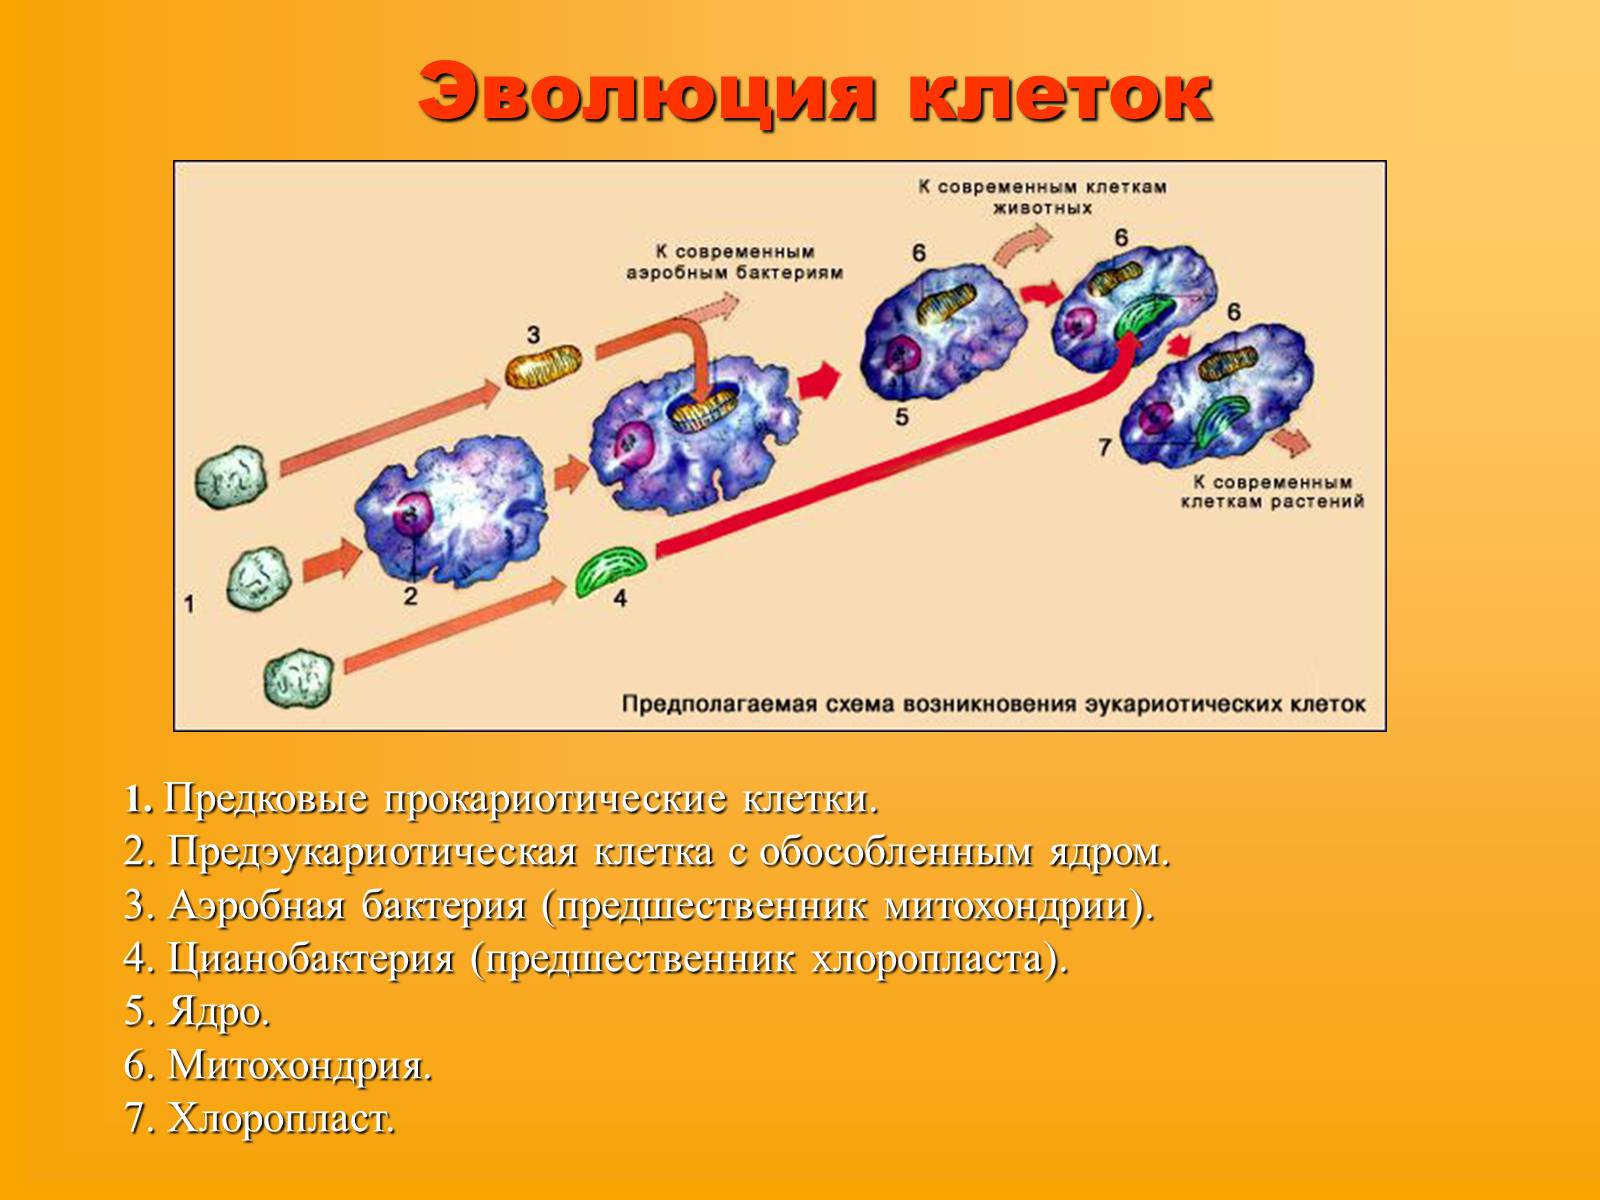 Развитие живой клетки. Эволюция эукариотической клетки. Схема эволюции эукариотических клеток. Эволюция клеток возникновение эукариот схема. Какие основные этапы эволюции клетки эукариот.